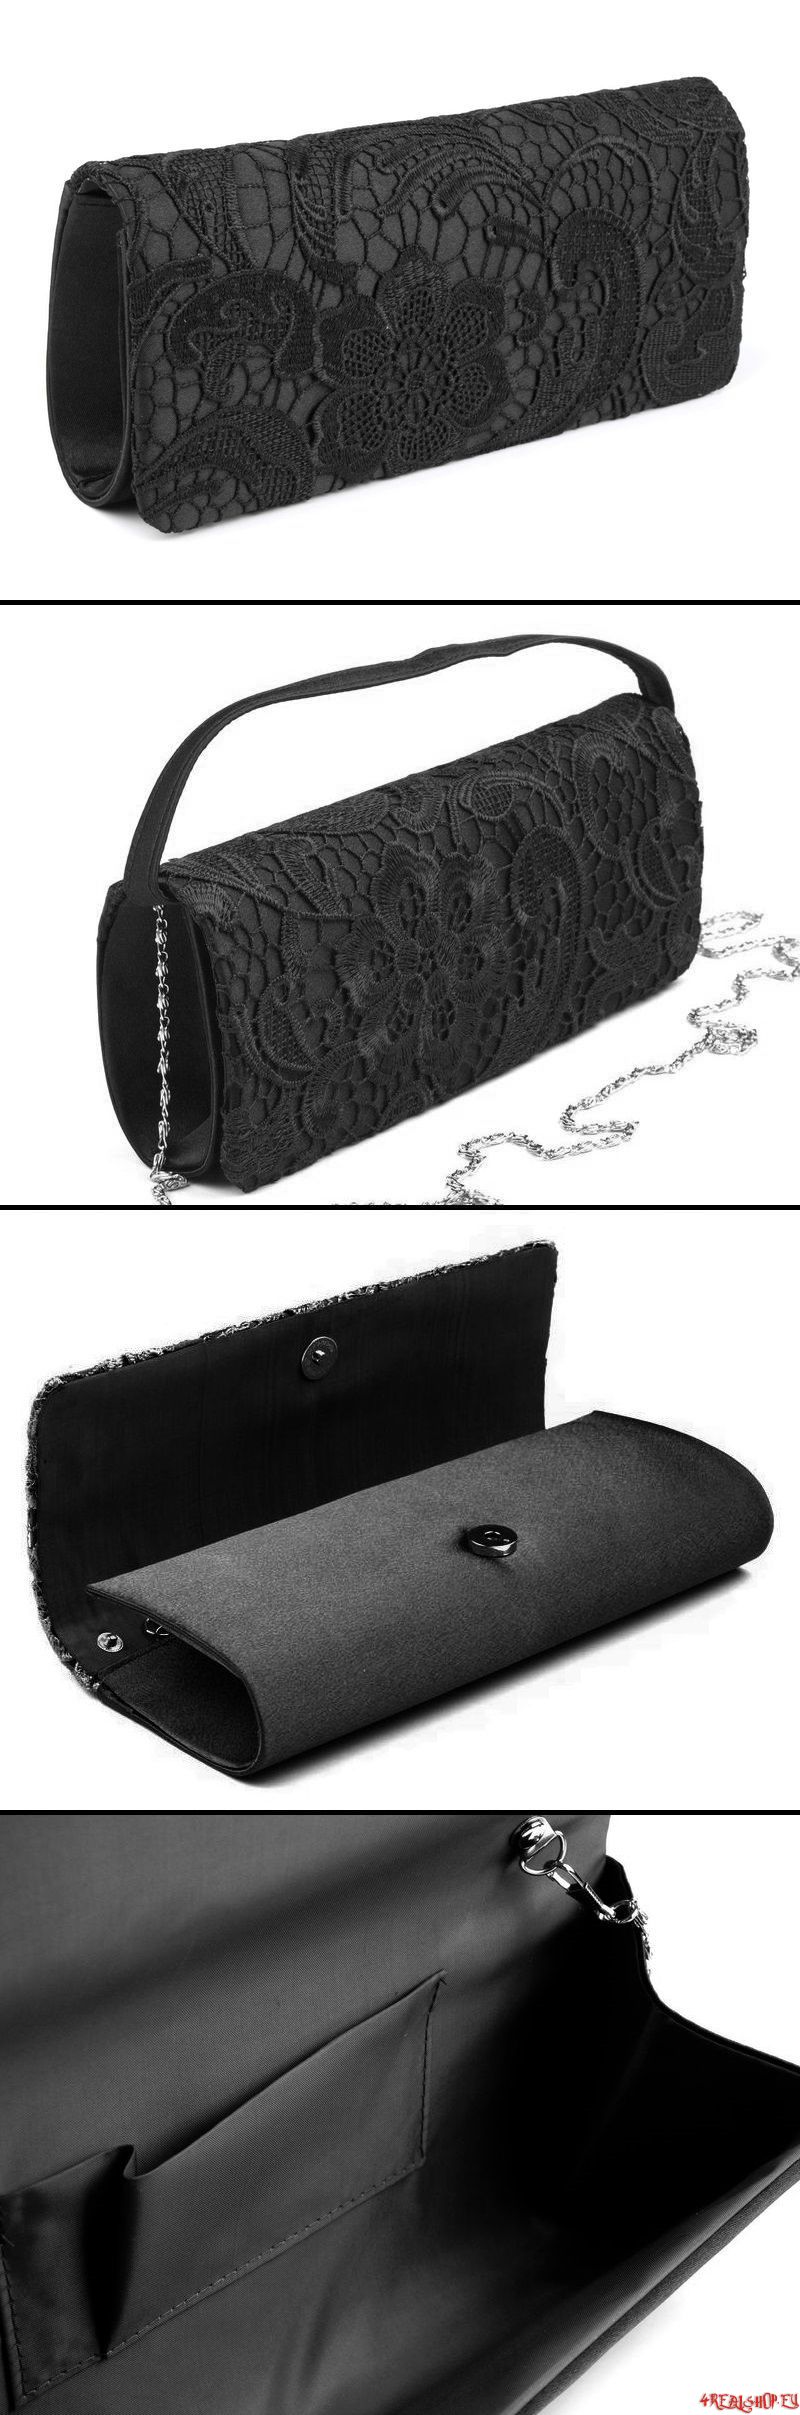 Gotická kabelka dámská - psaníčko s černou krajkou